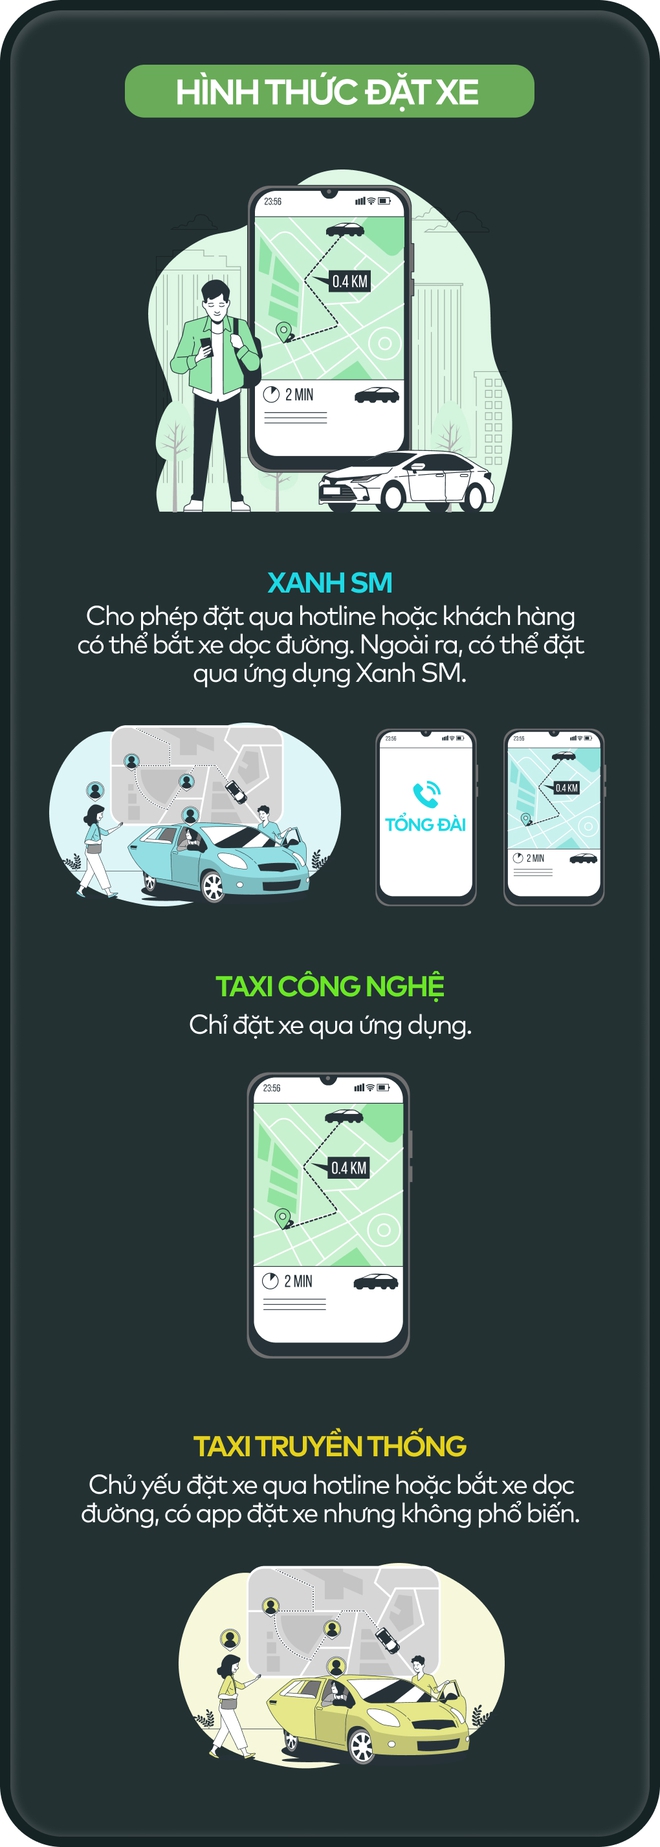 Infographic: So sánh taxi Xanh SM, taxi công nghệ và taxi truyền thống - Ảnh 4.